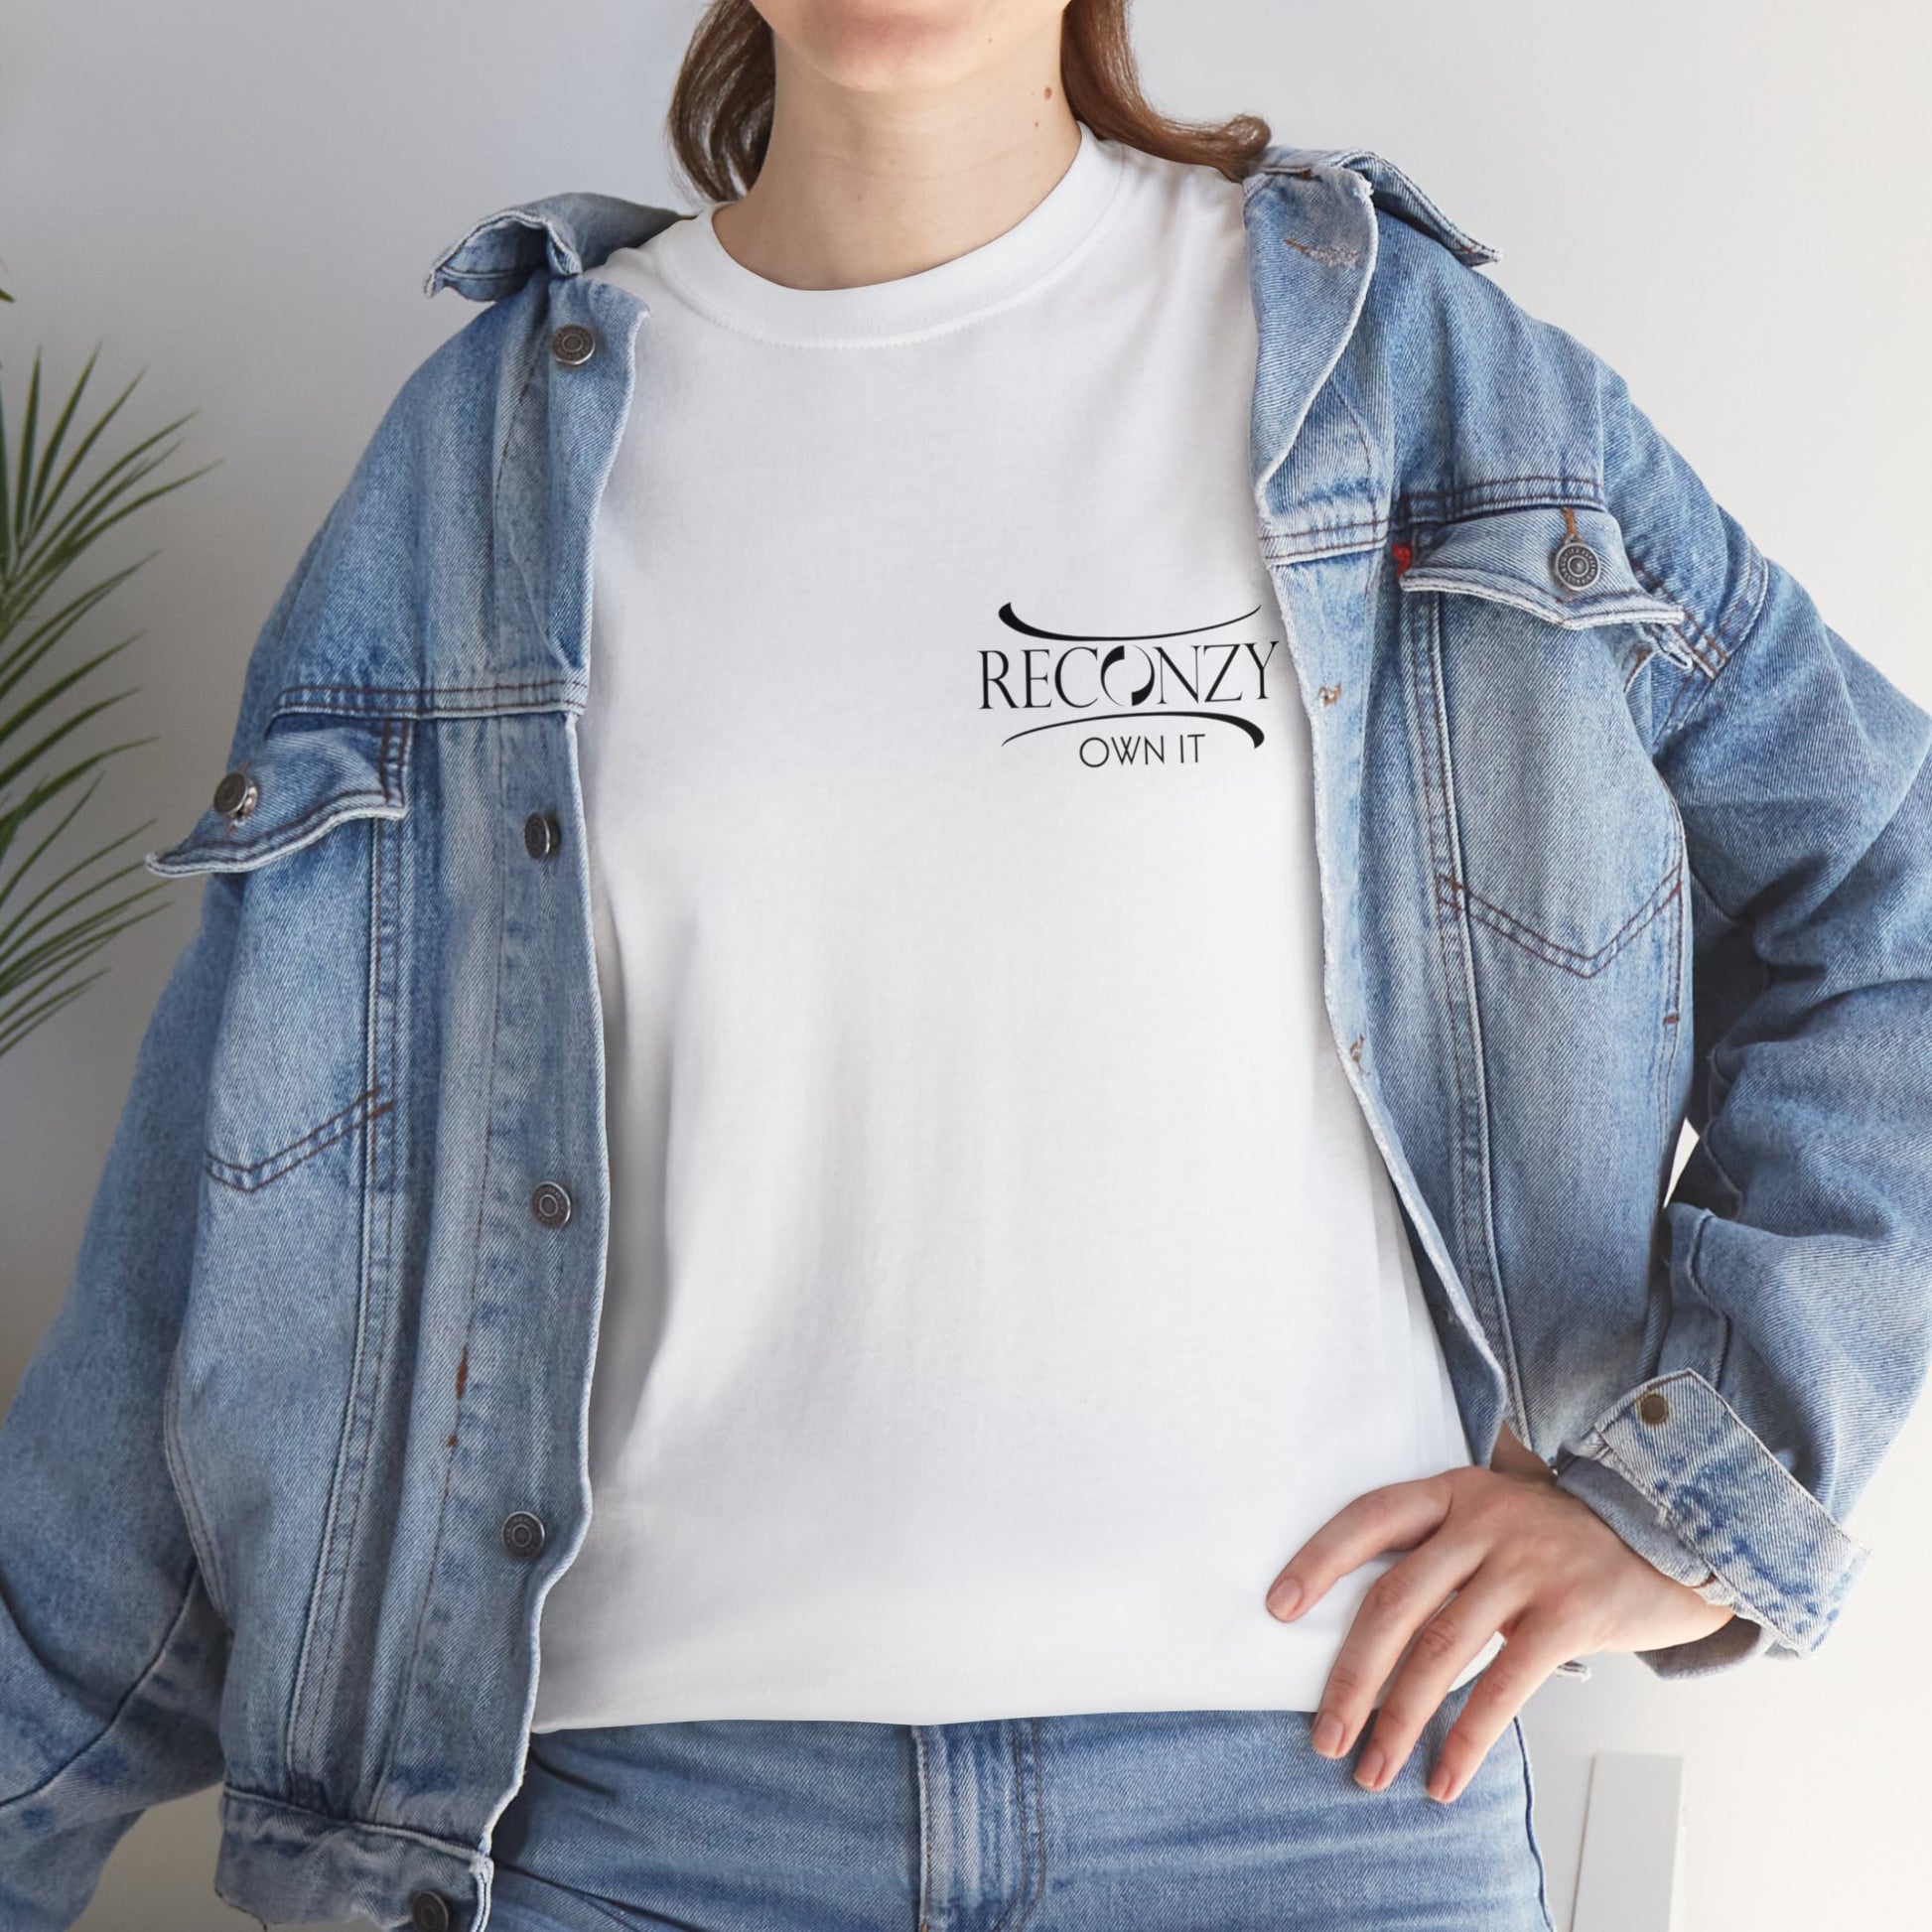 RECONZY White 'Logo - Own It' Pop-Punk T-Shirt - Model View.